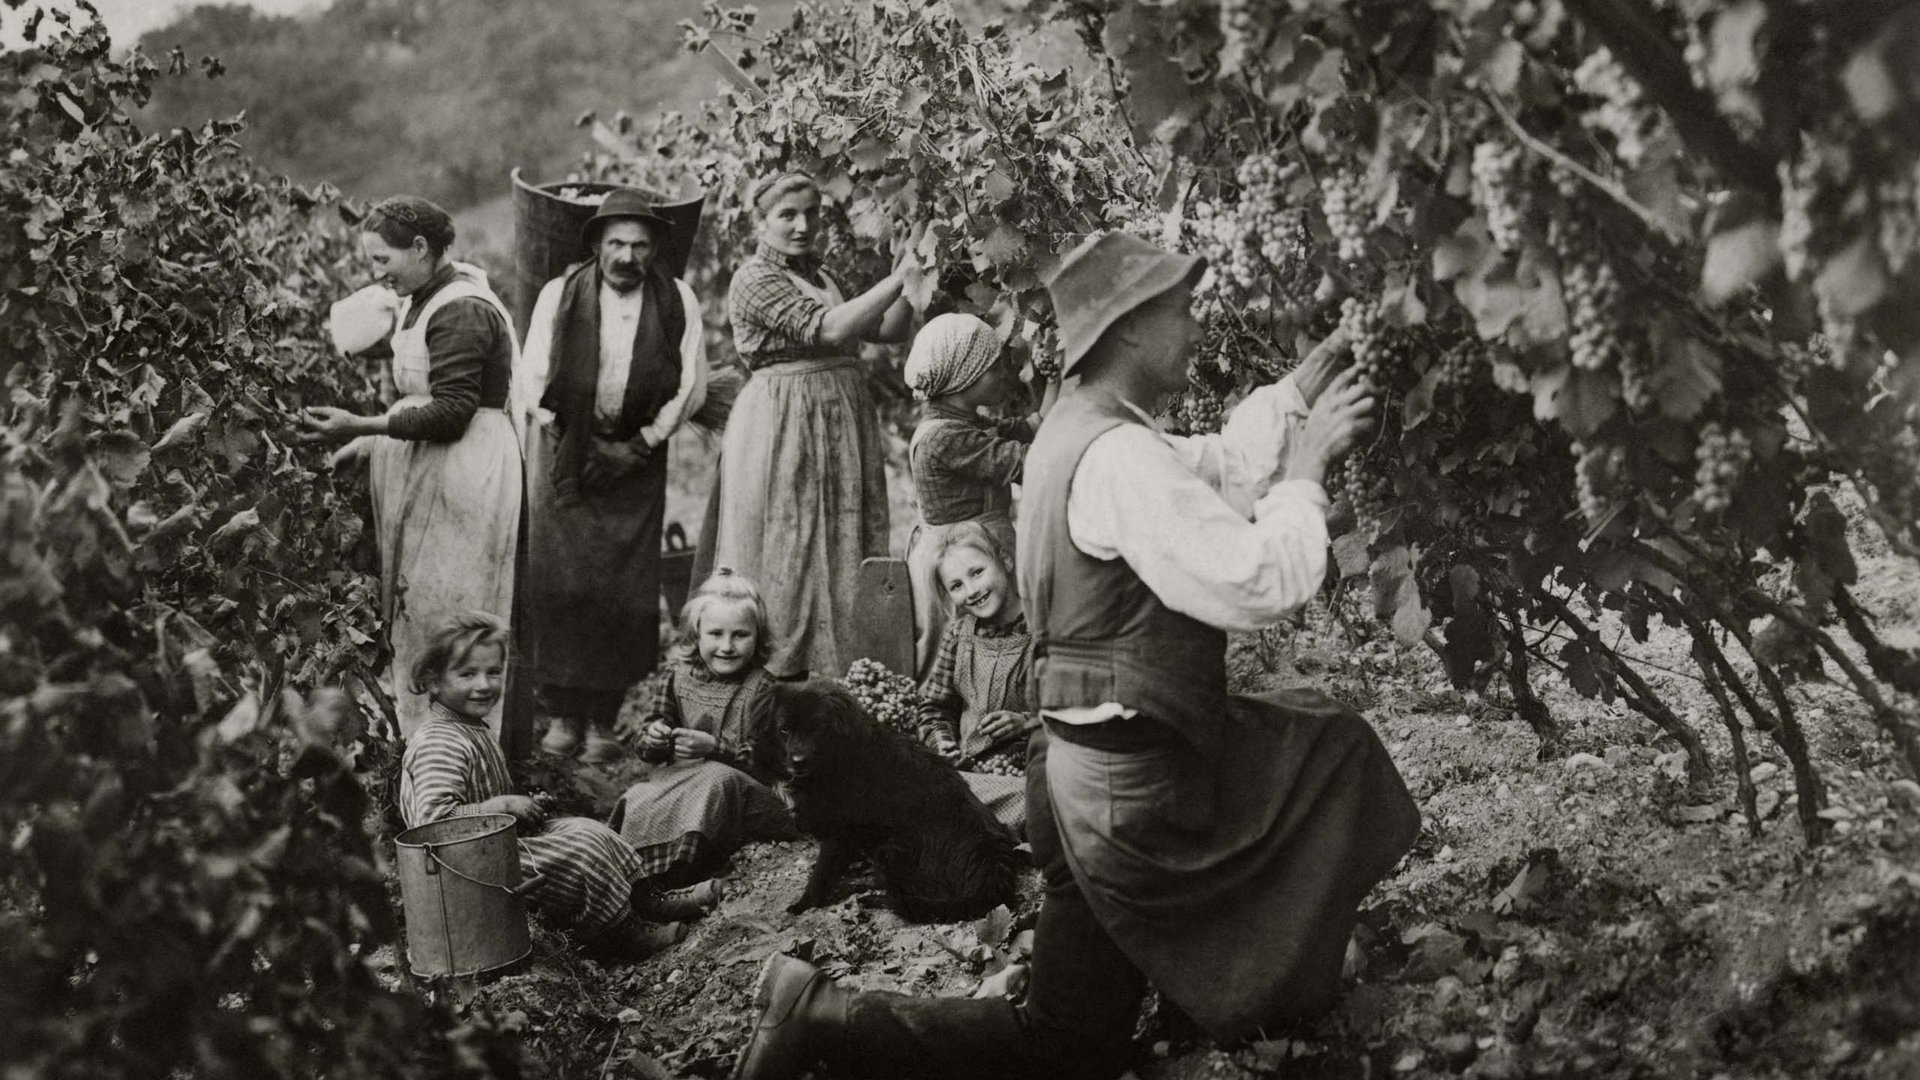 Vinhotel in Alto Adige: amore millenario per il vino